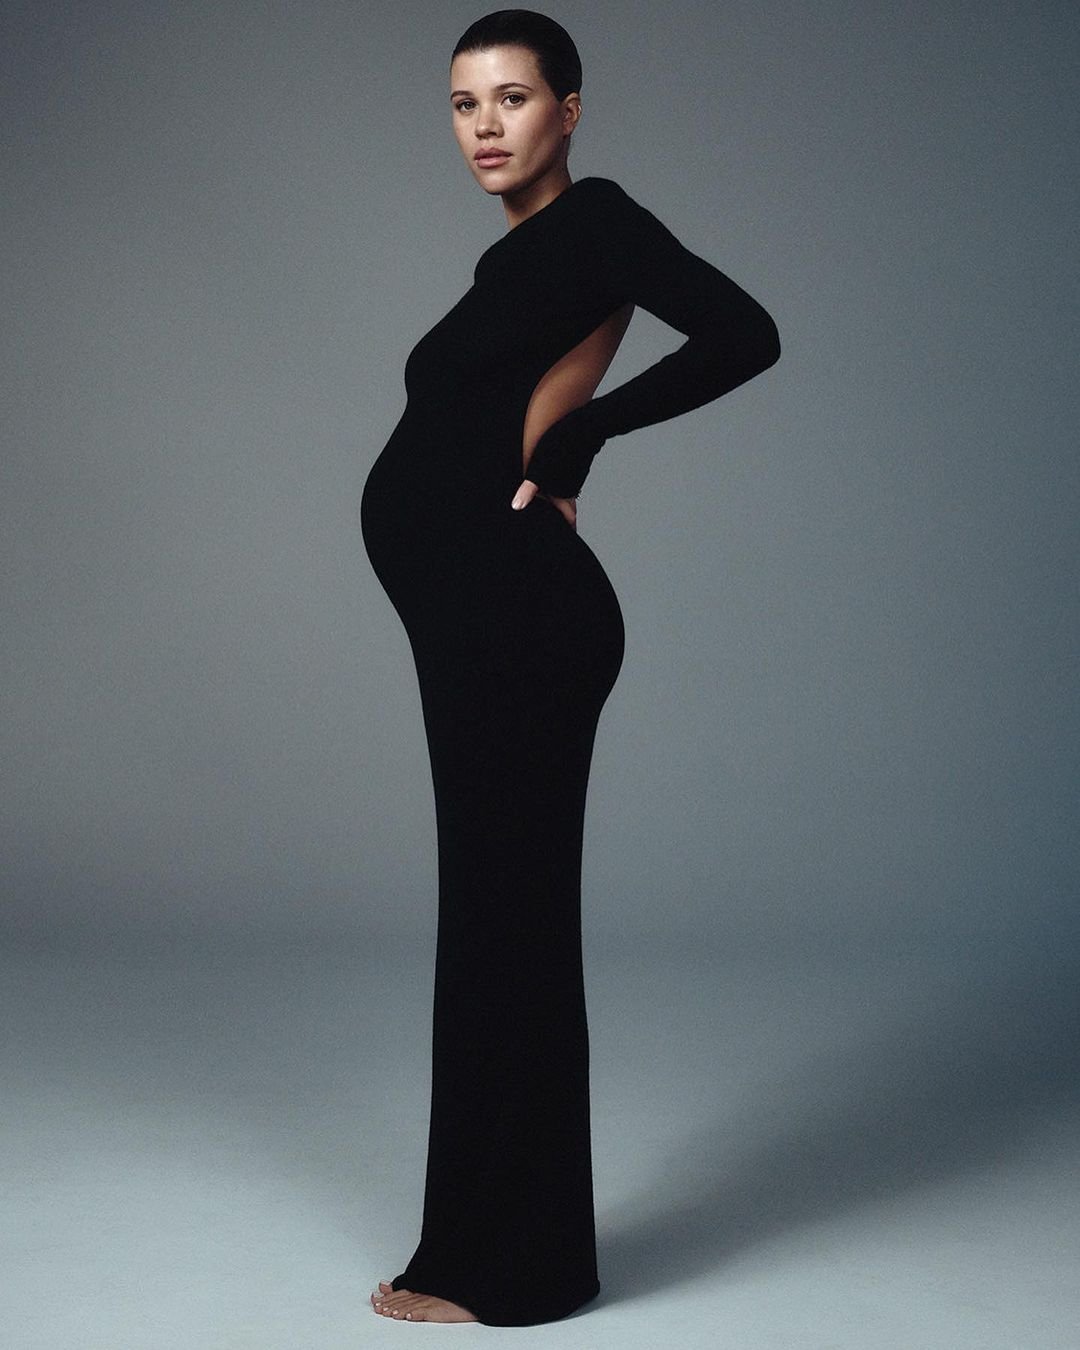 Sofia Richie Grainge - vestido longo - quite luxury - Inverno - Estados Unidos - https://stealthelook.com.br